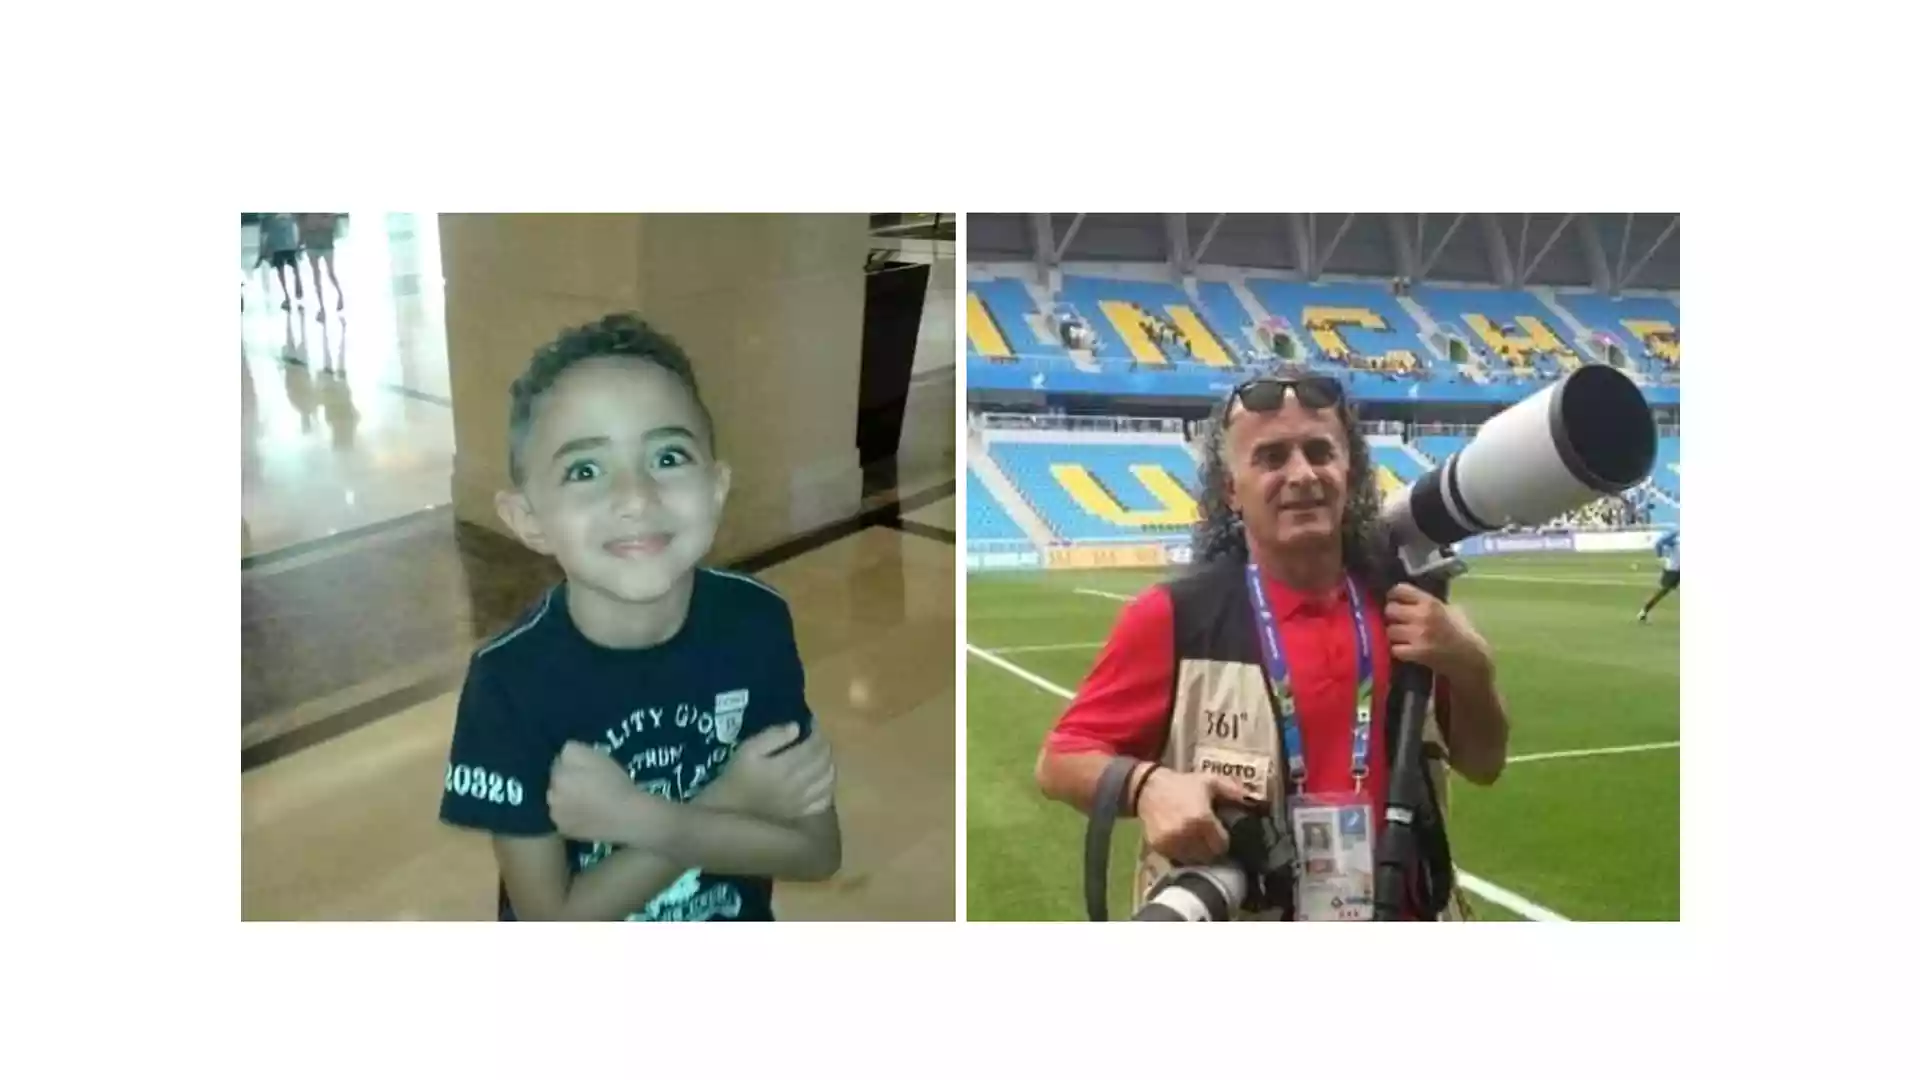 بعد مقتل طفل.. أبو وهدان يعلن مقاطعته التصوير الرياضي في الأردن